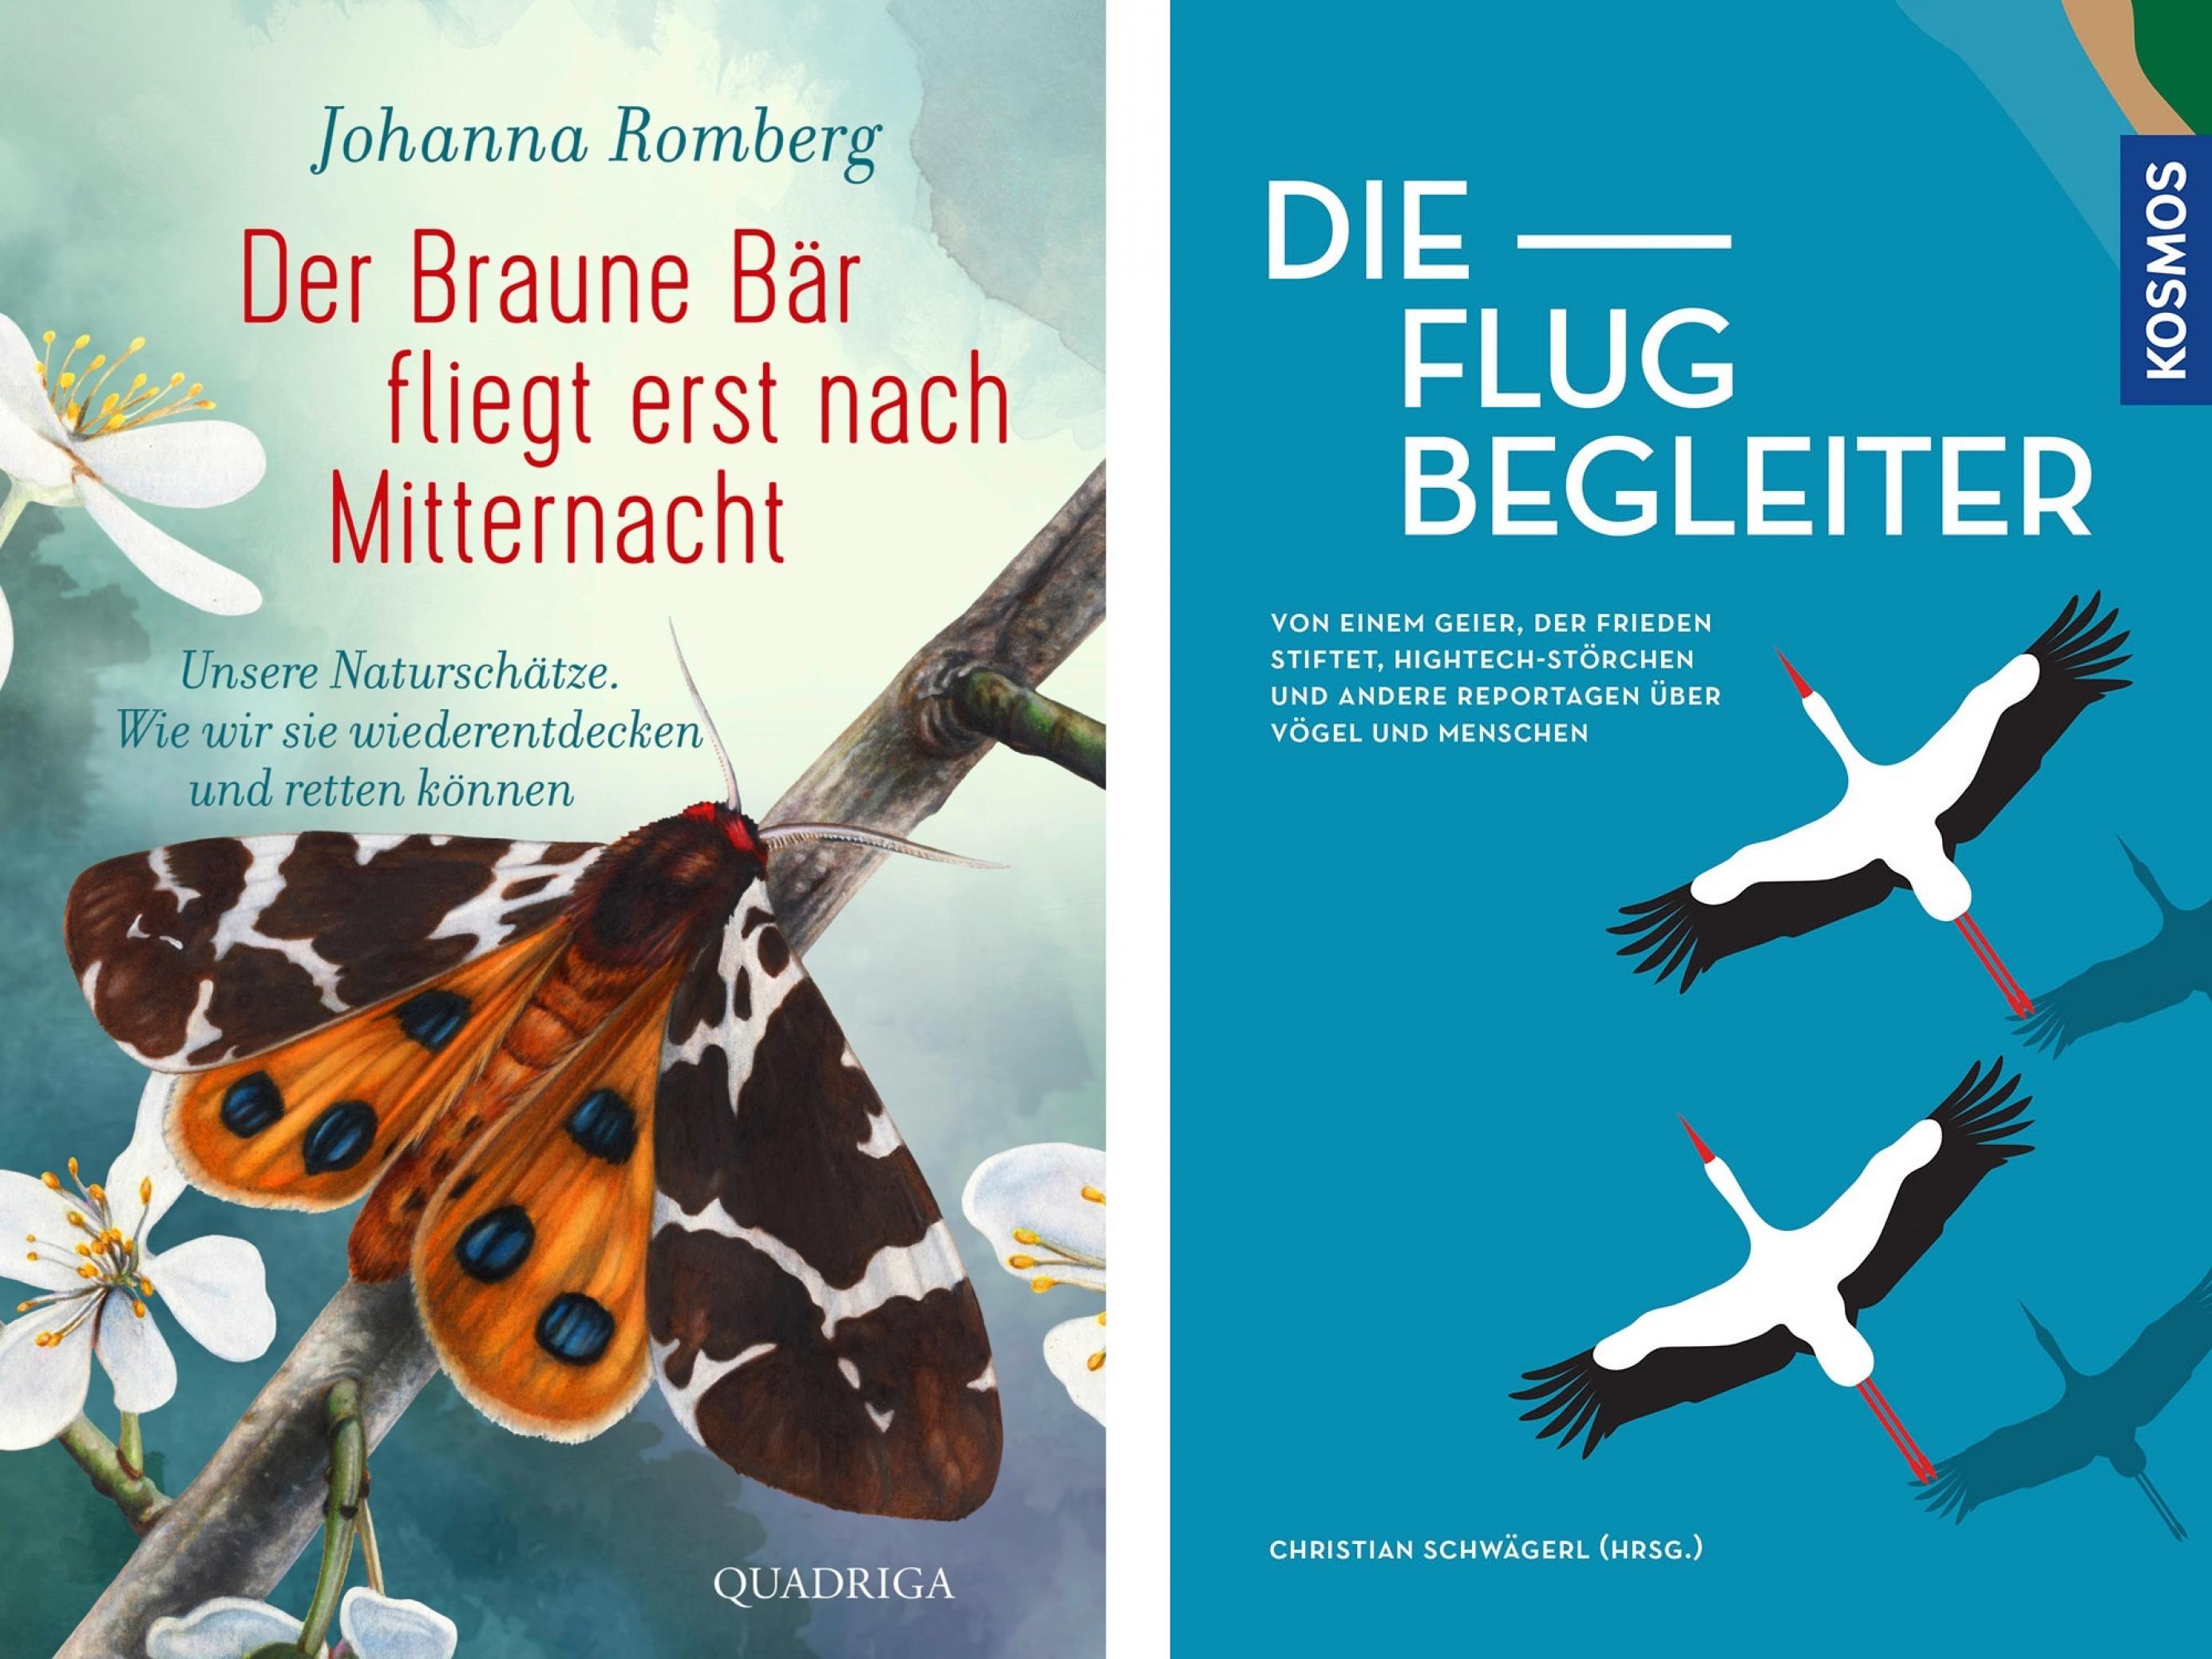 Das Bild zeigt die Cover der Bücher von Johanna Romberg (erscheint im Februar) und der Flugbegleiter (2020 erschienen).